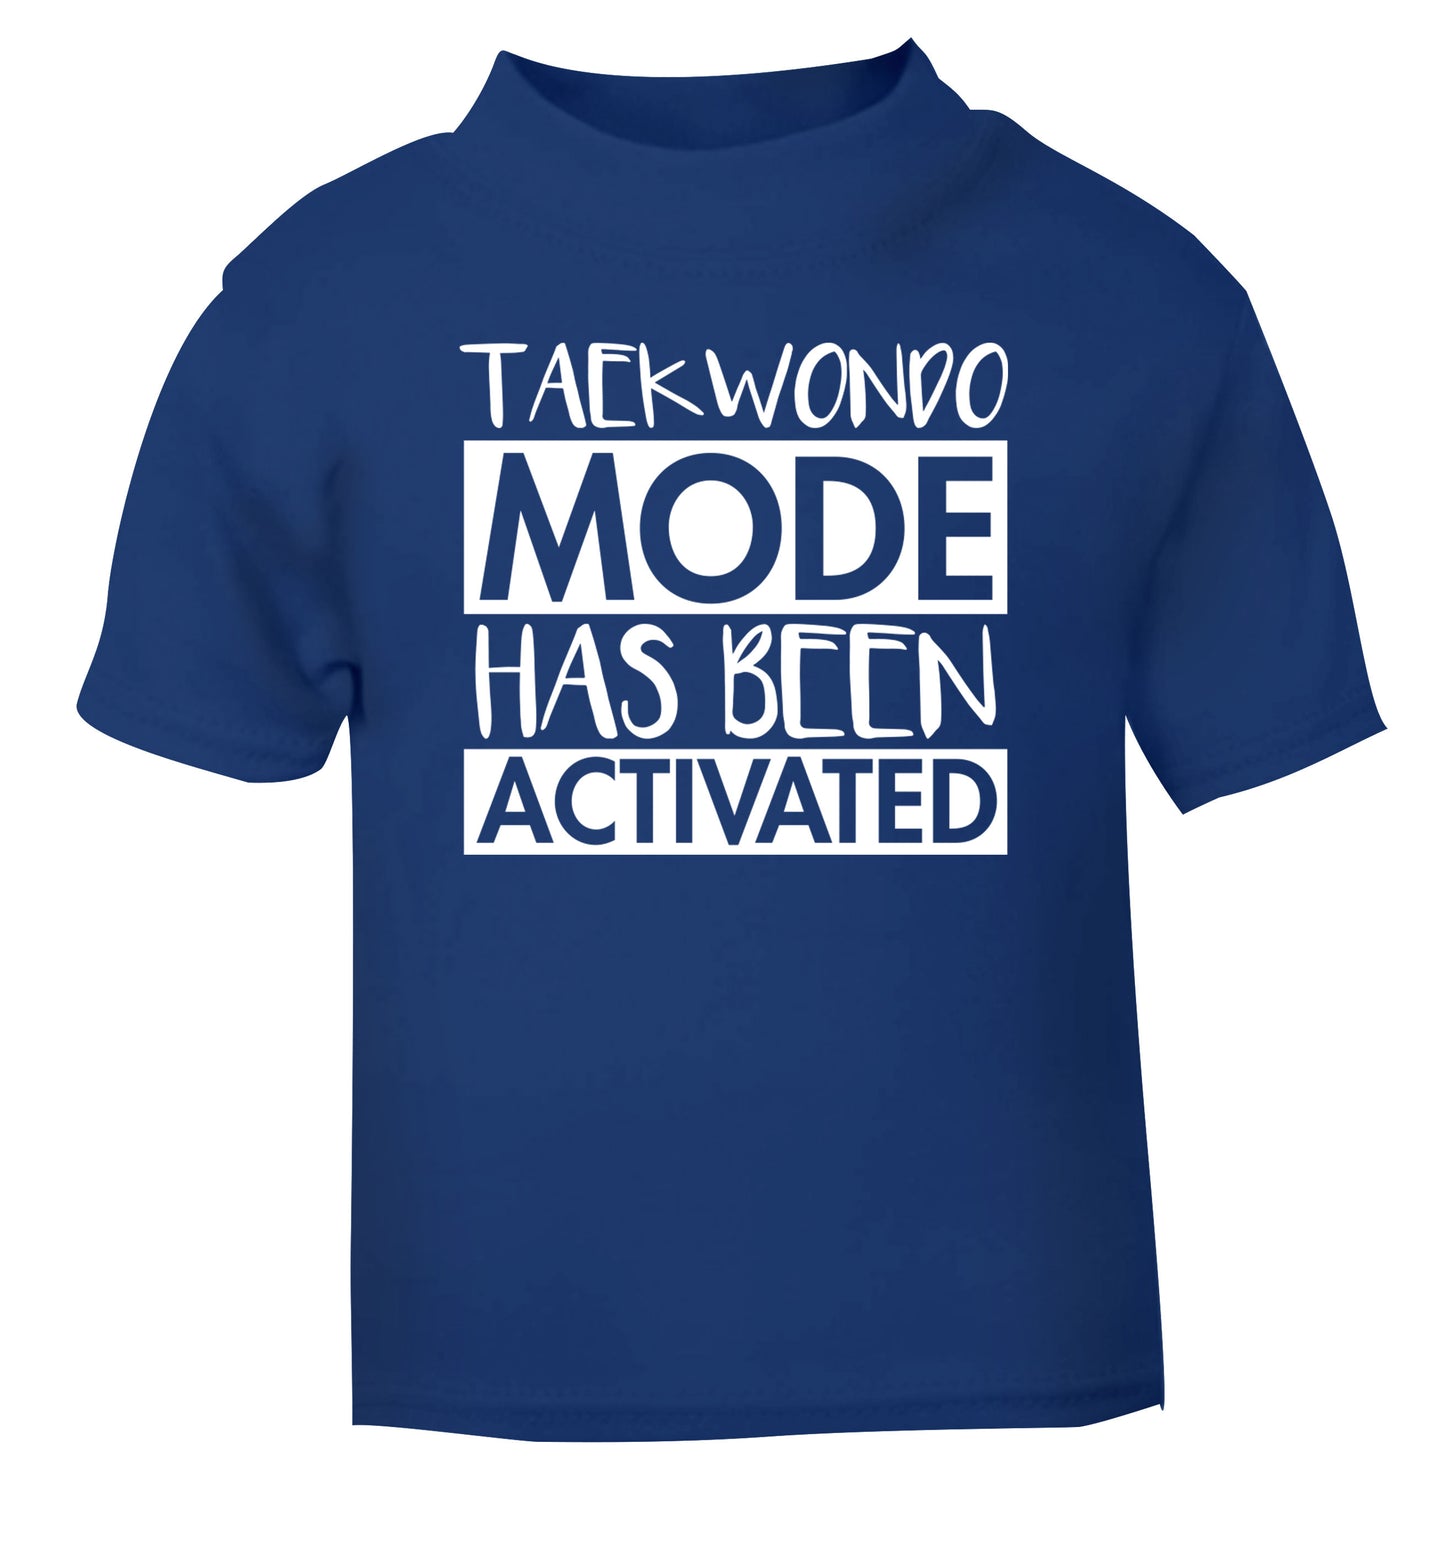 Taekwondo mode activated blue Baby Toddler Tshirt 2 Years